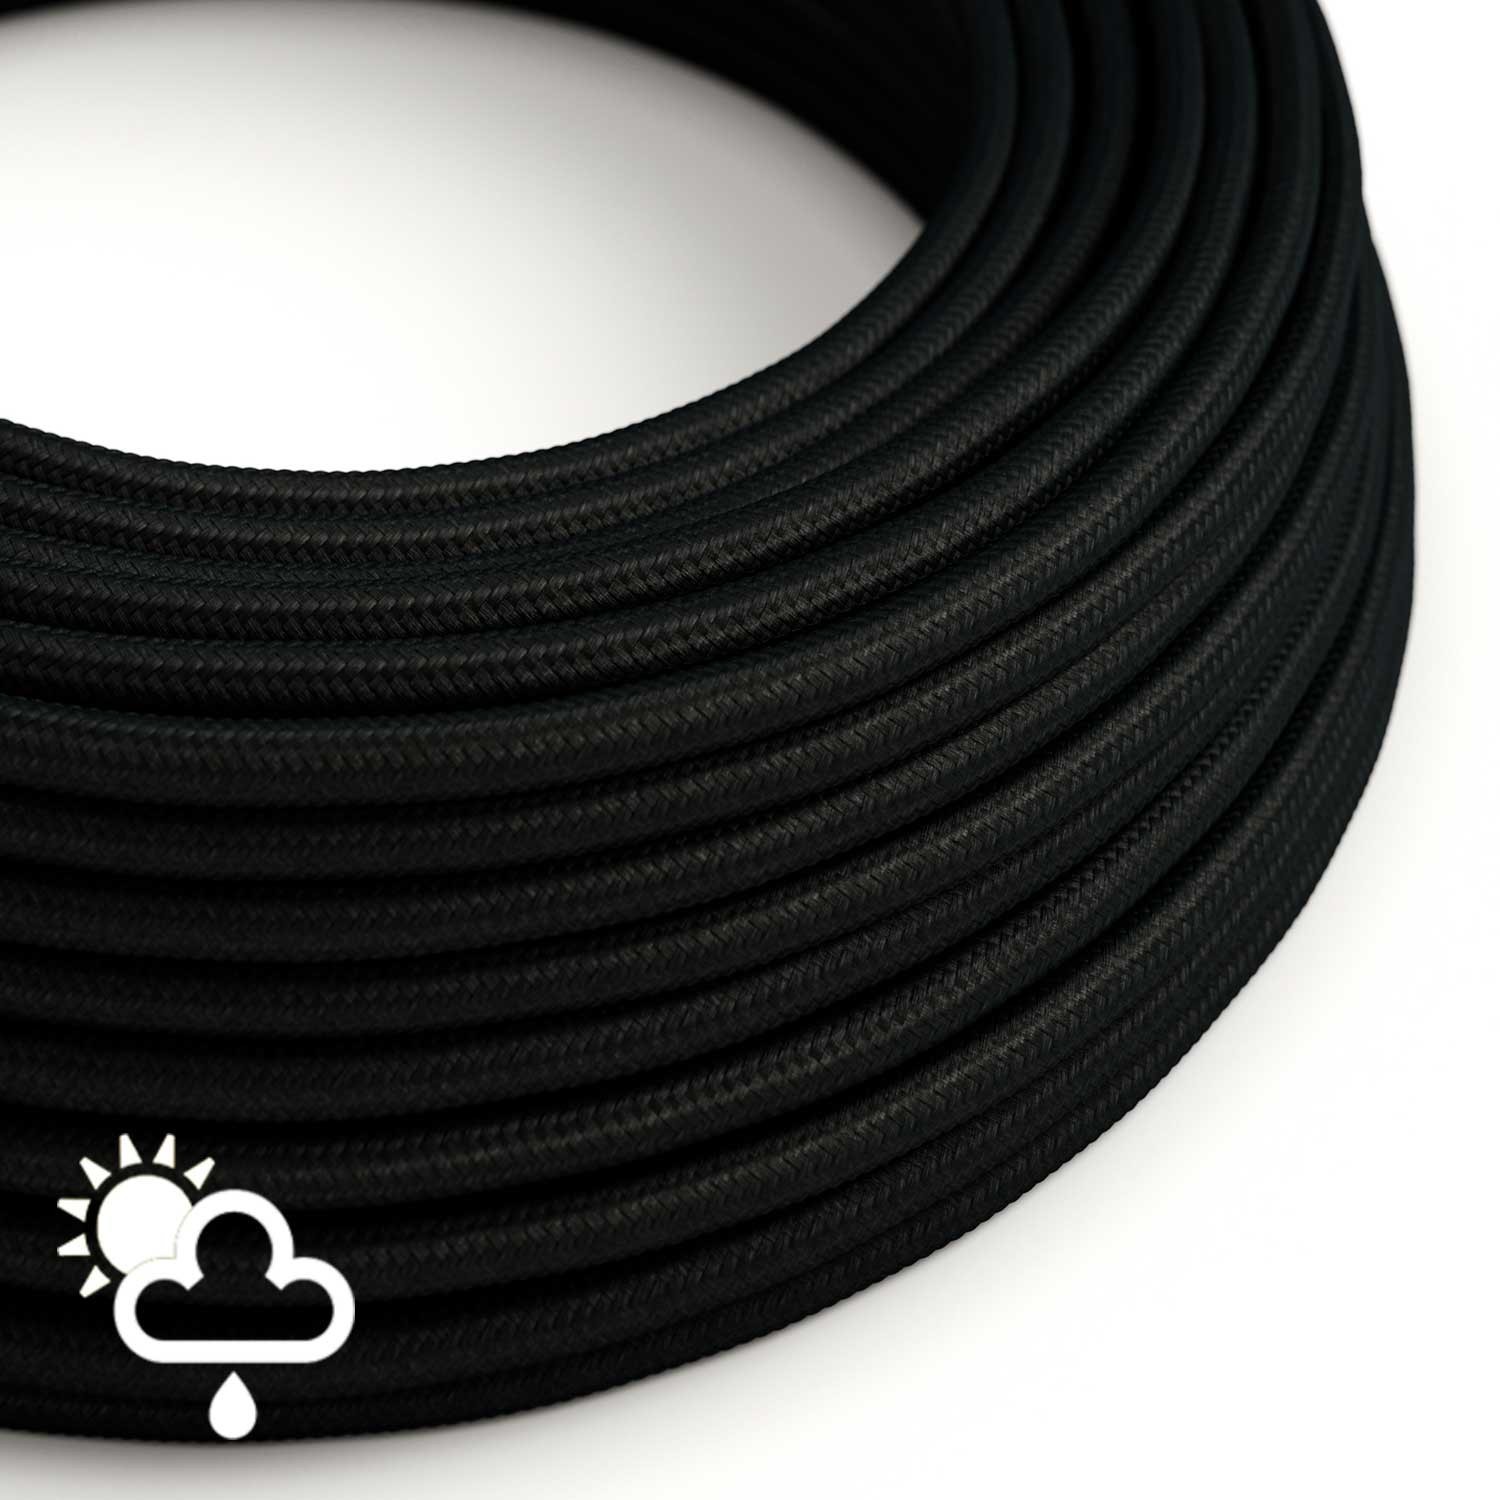 https://www.creative-cables.co/84559-big_default/cable-electrico-para-exterior-redondo-revestido-en-tejido-efecto-seda-negro-sm04.jpg